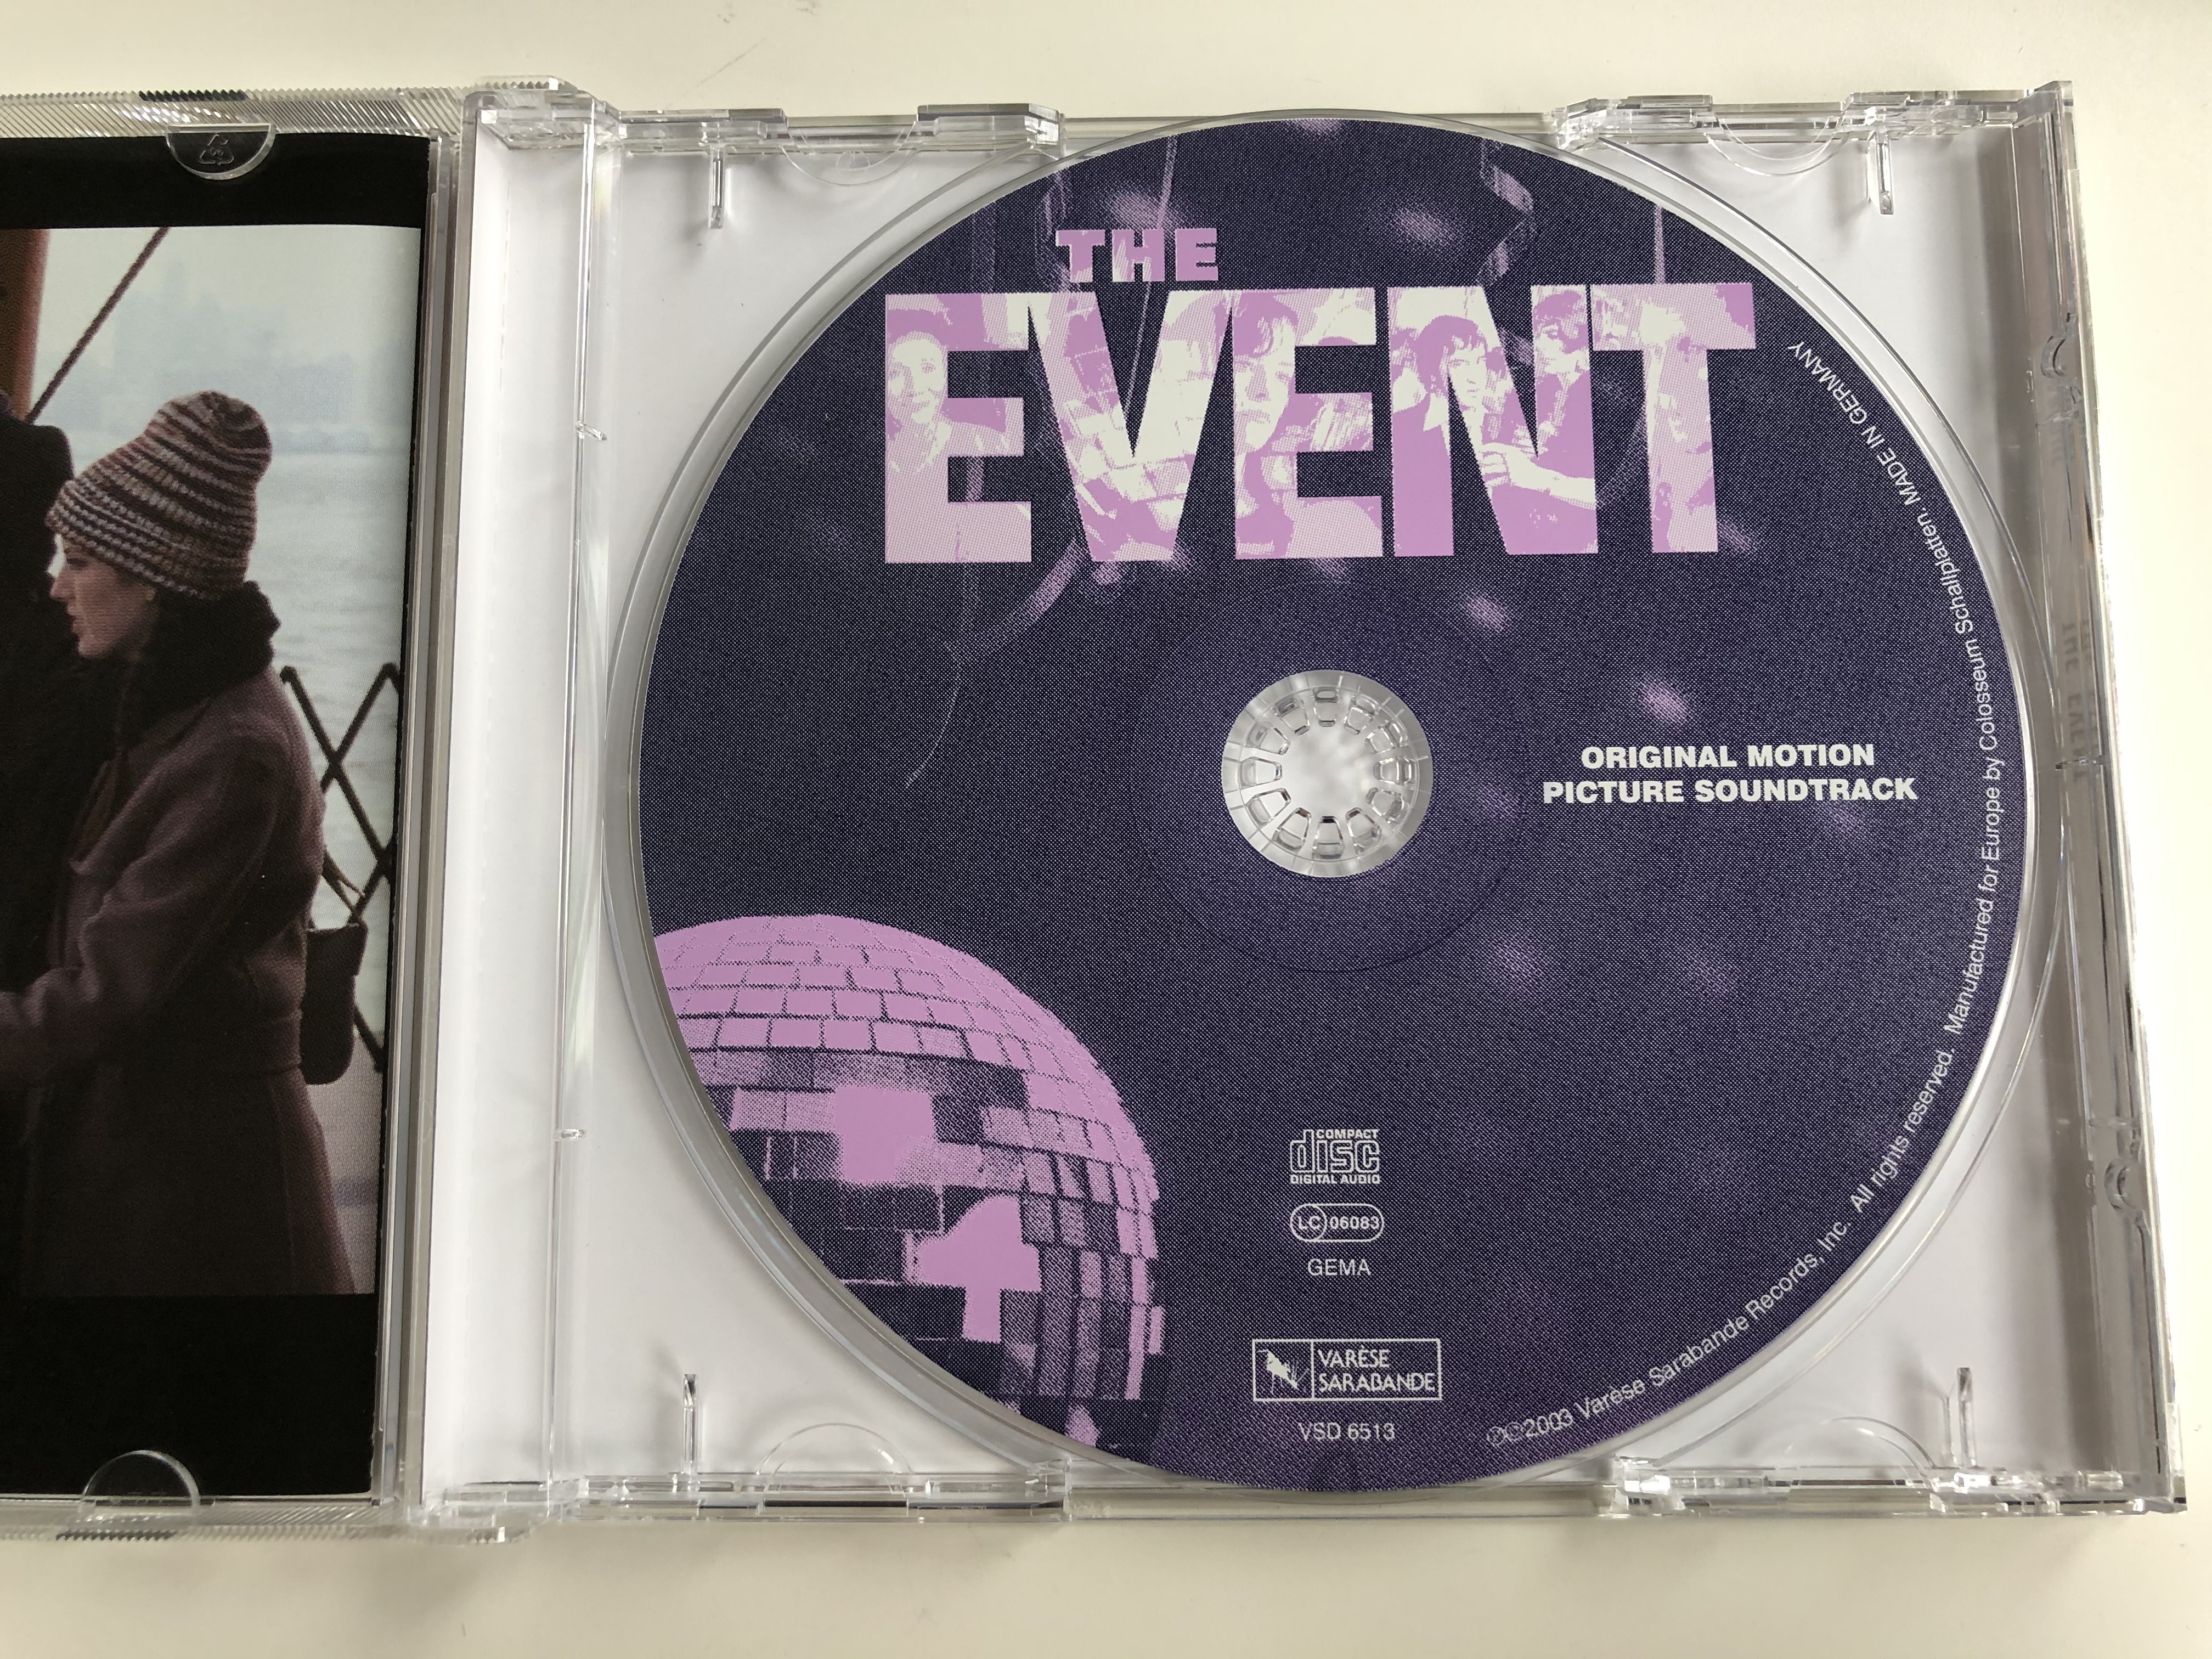 original-motion-picture-soundtrack-the-event-var-se-sarabande-audio-cd-2003-vsd6513-5-.jpg